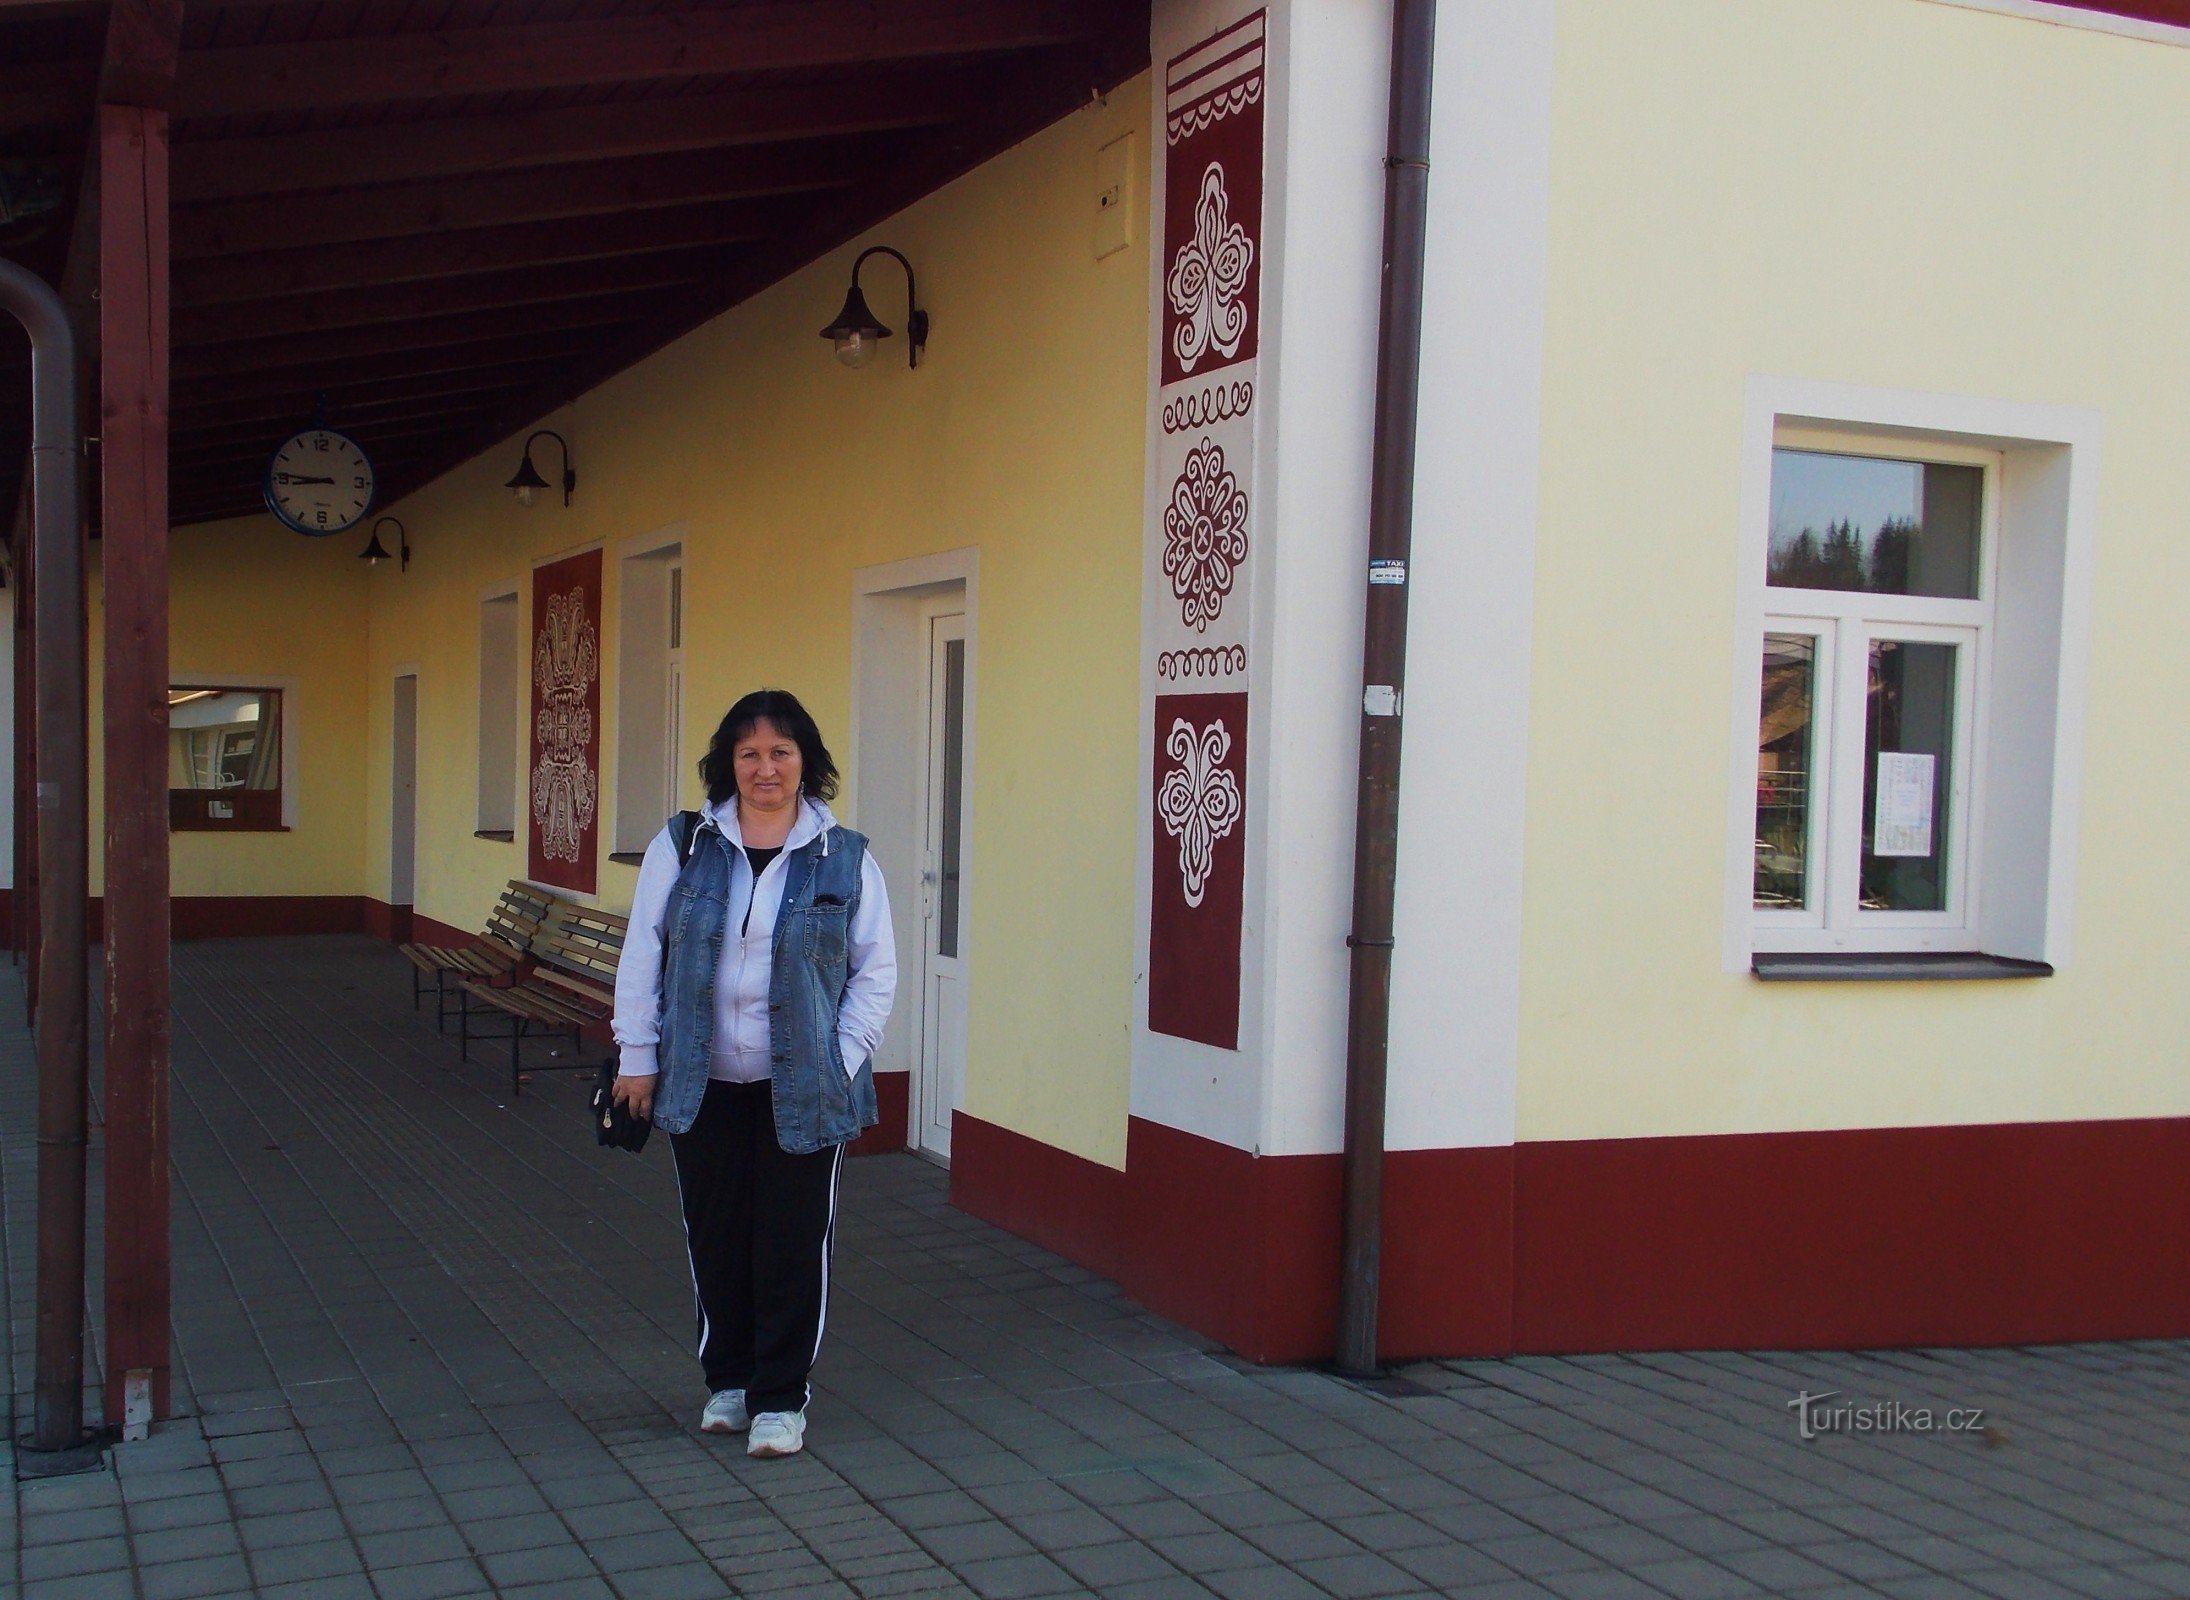 Залізнична станція в Лугачовіце